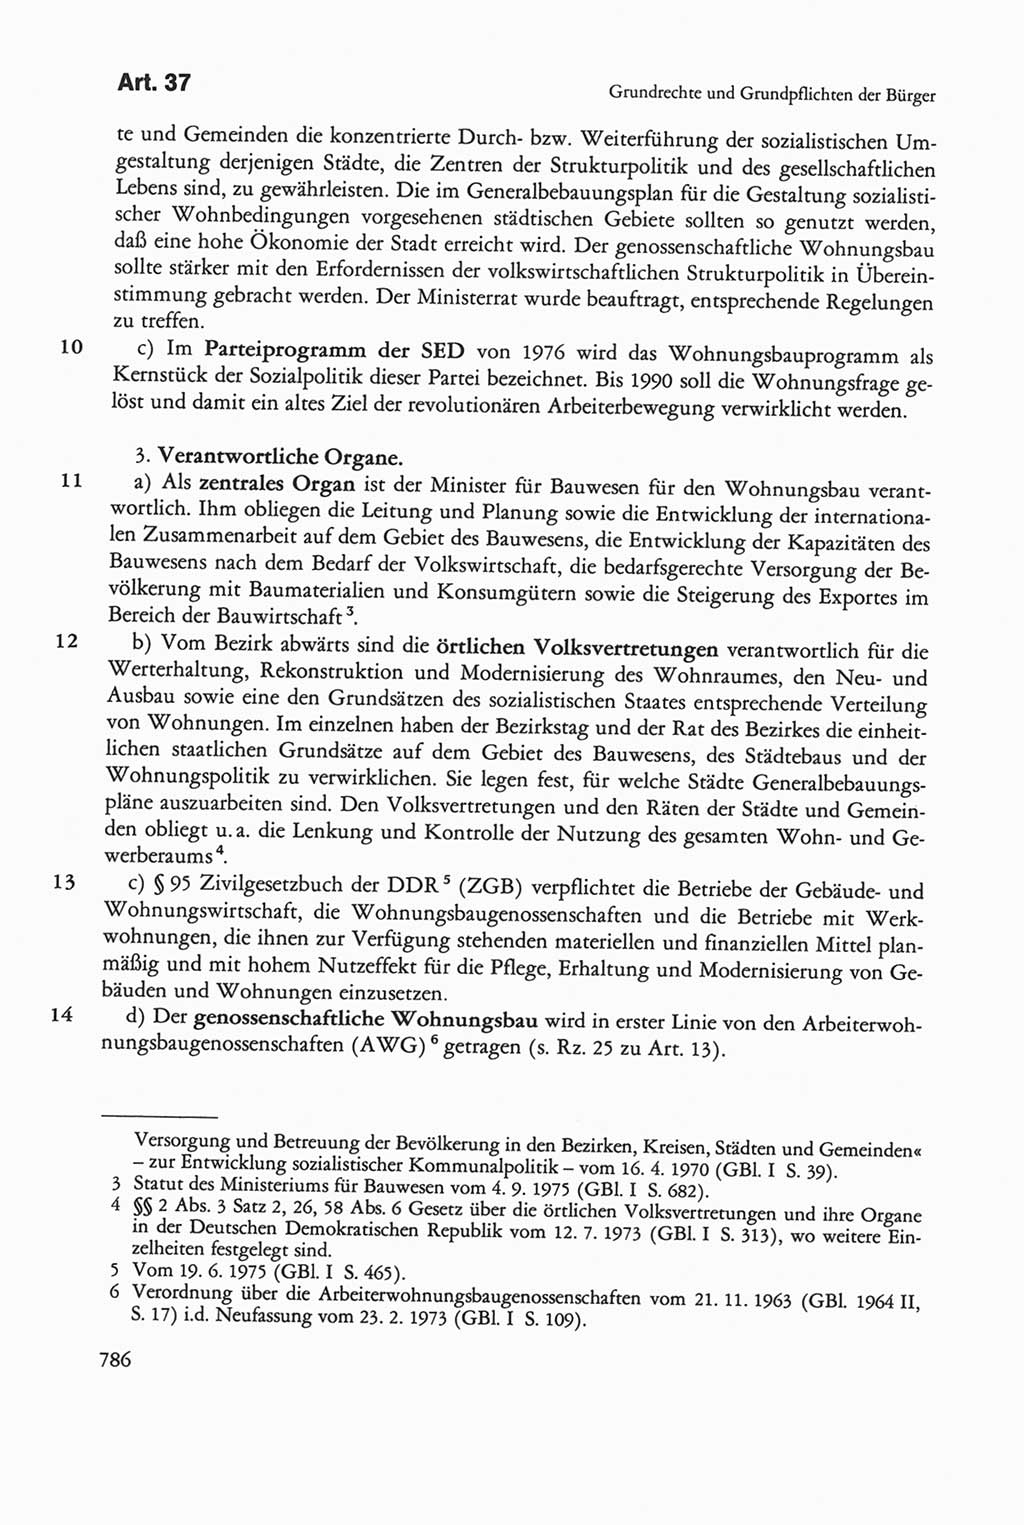 Die sozialistische Verfassung der Deutschen Demokratischen Republik (DDR), Kommentar 1982, Seite 786 (Soz. Verf. DDR Komm. 1982, S. 786)